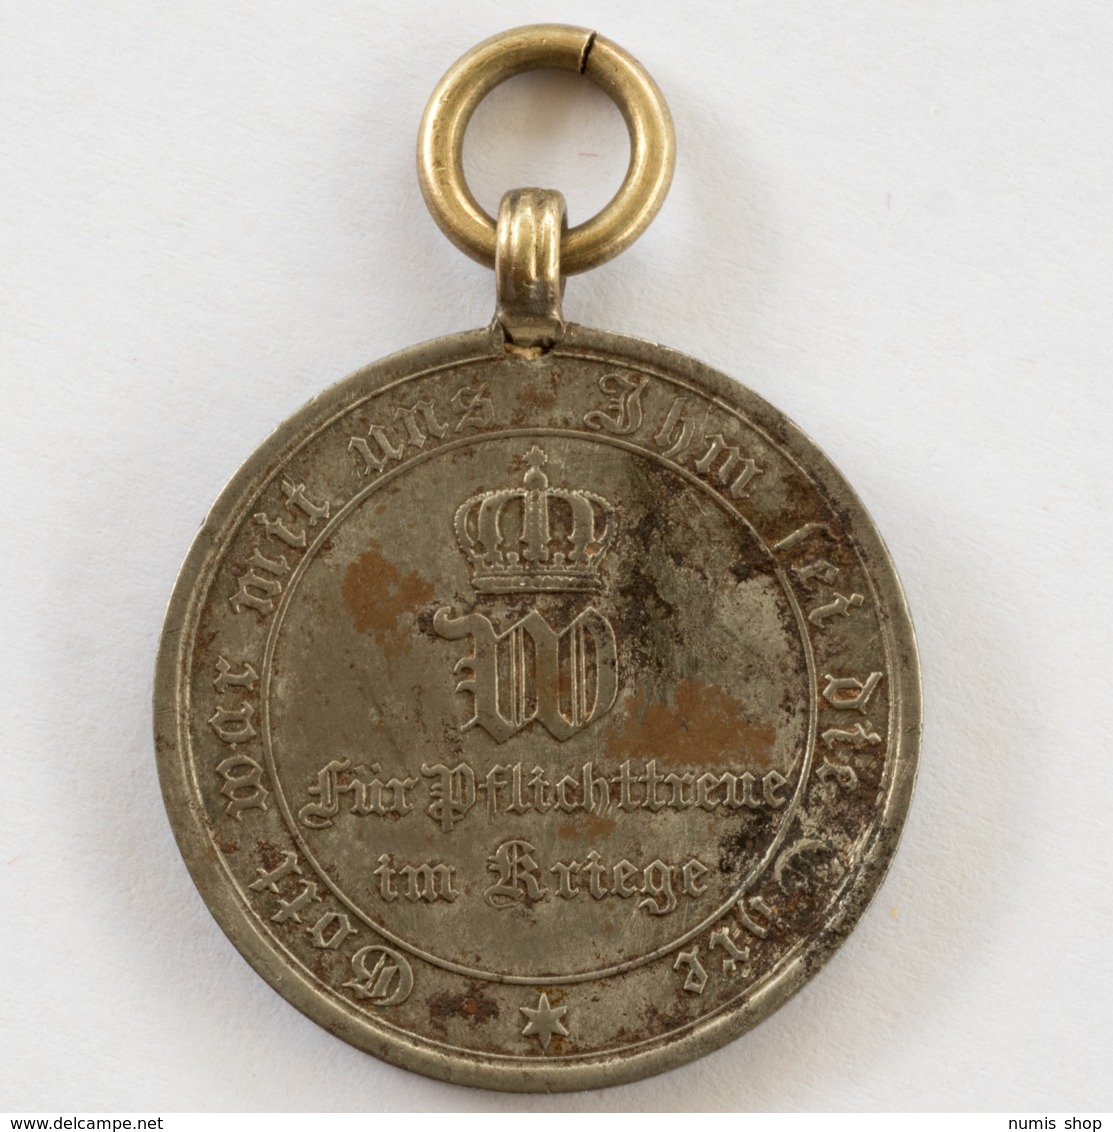 GERMANY - EMPIRE - Medaille - Für Pflichttreue Im Kriege - 1870 / 71 - #962 - Allemagne